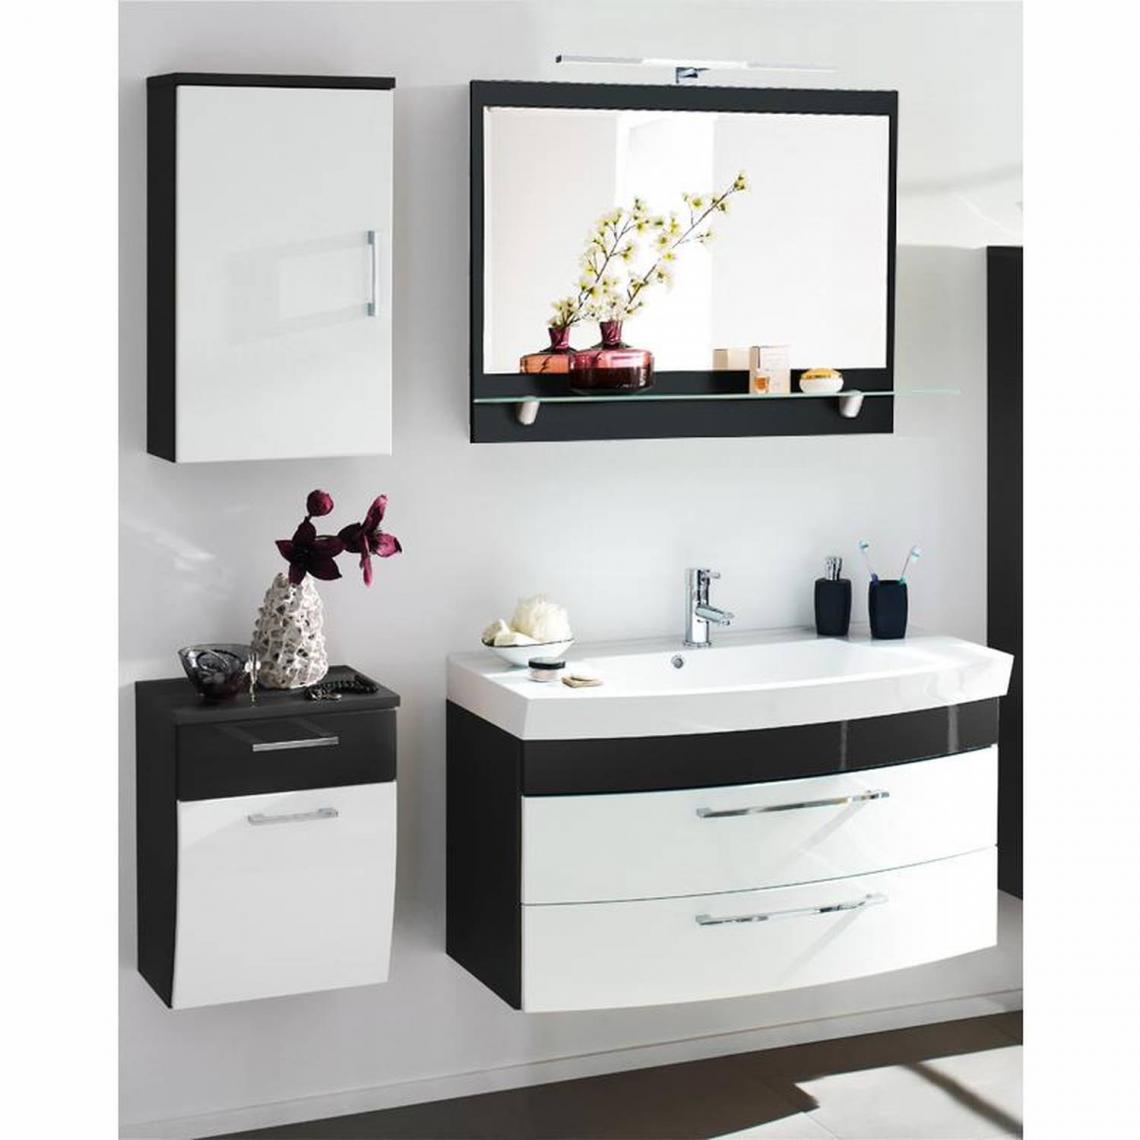 En.Casa - Ensemble de meubles de salle de bains blanc brillant, anthracite, miroir avec lampe chromée (4 pièces), x H x P : environ 160 x 200 x 57 cm - Meubles de salle de bain